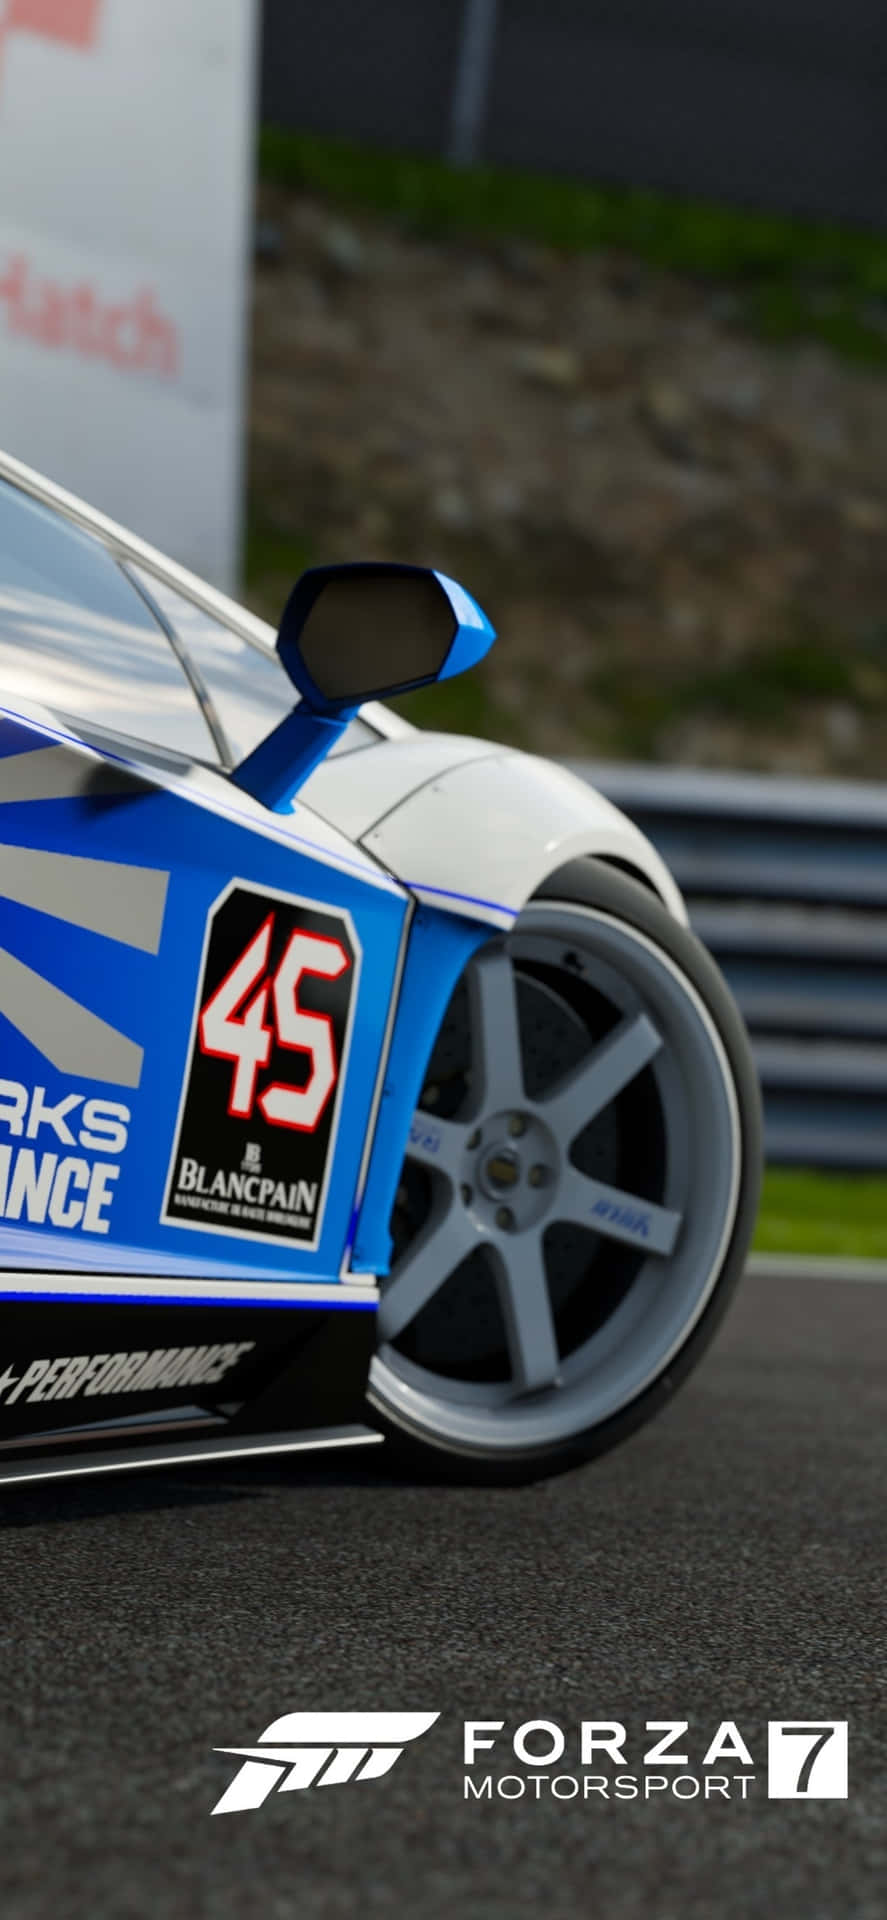 Fundode Tela Forza Motorsport 7 Para Iphone X Com Carro Branco E Azul.